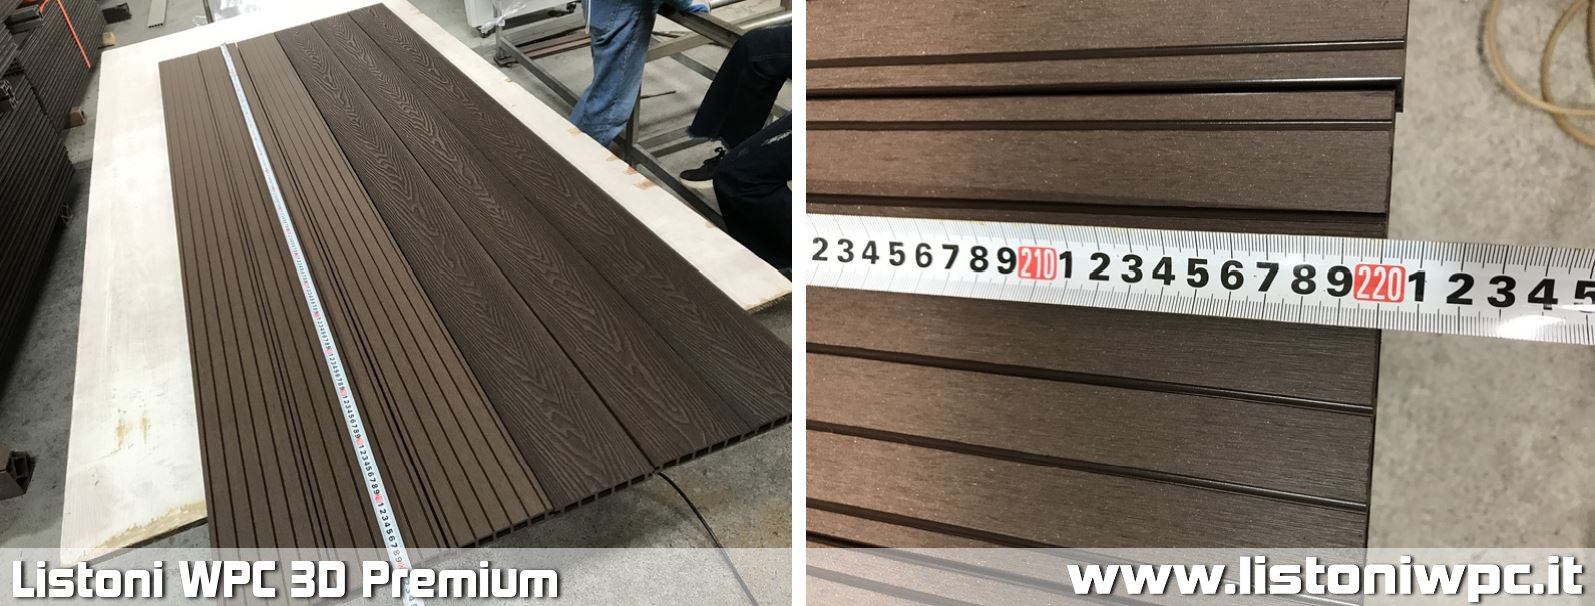 listoni wpc pavimenti recinzioni staccionate frangivento legno composito madelux